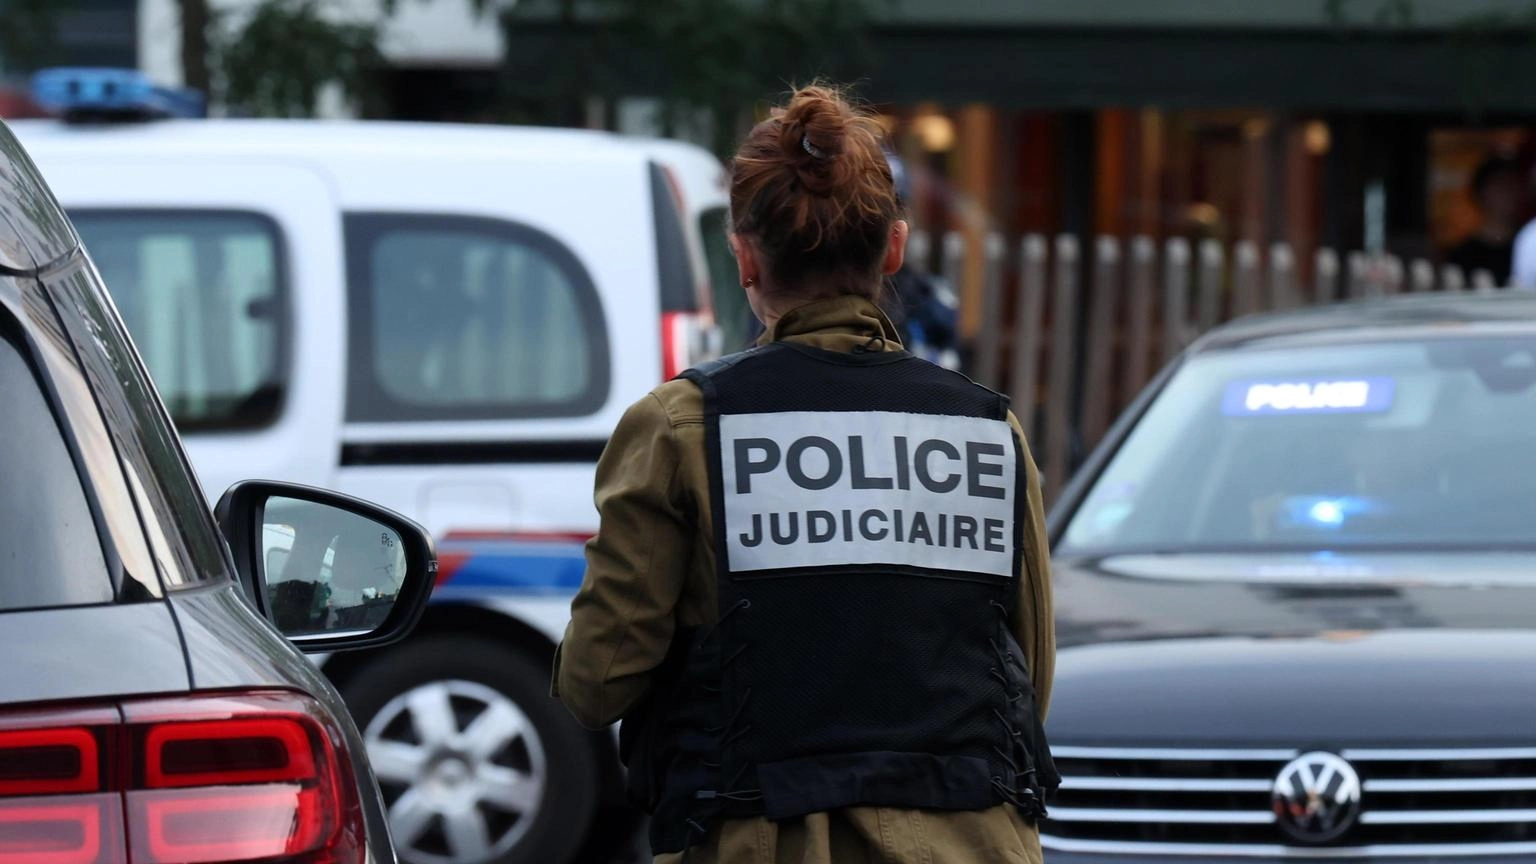 Spari vicino al tribunale di Mulhouse in Francia, un morto